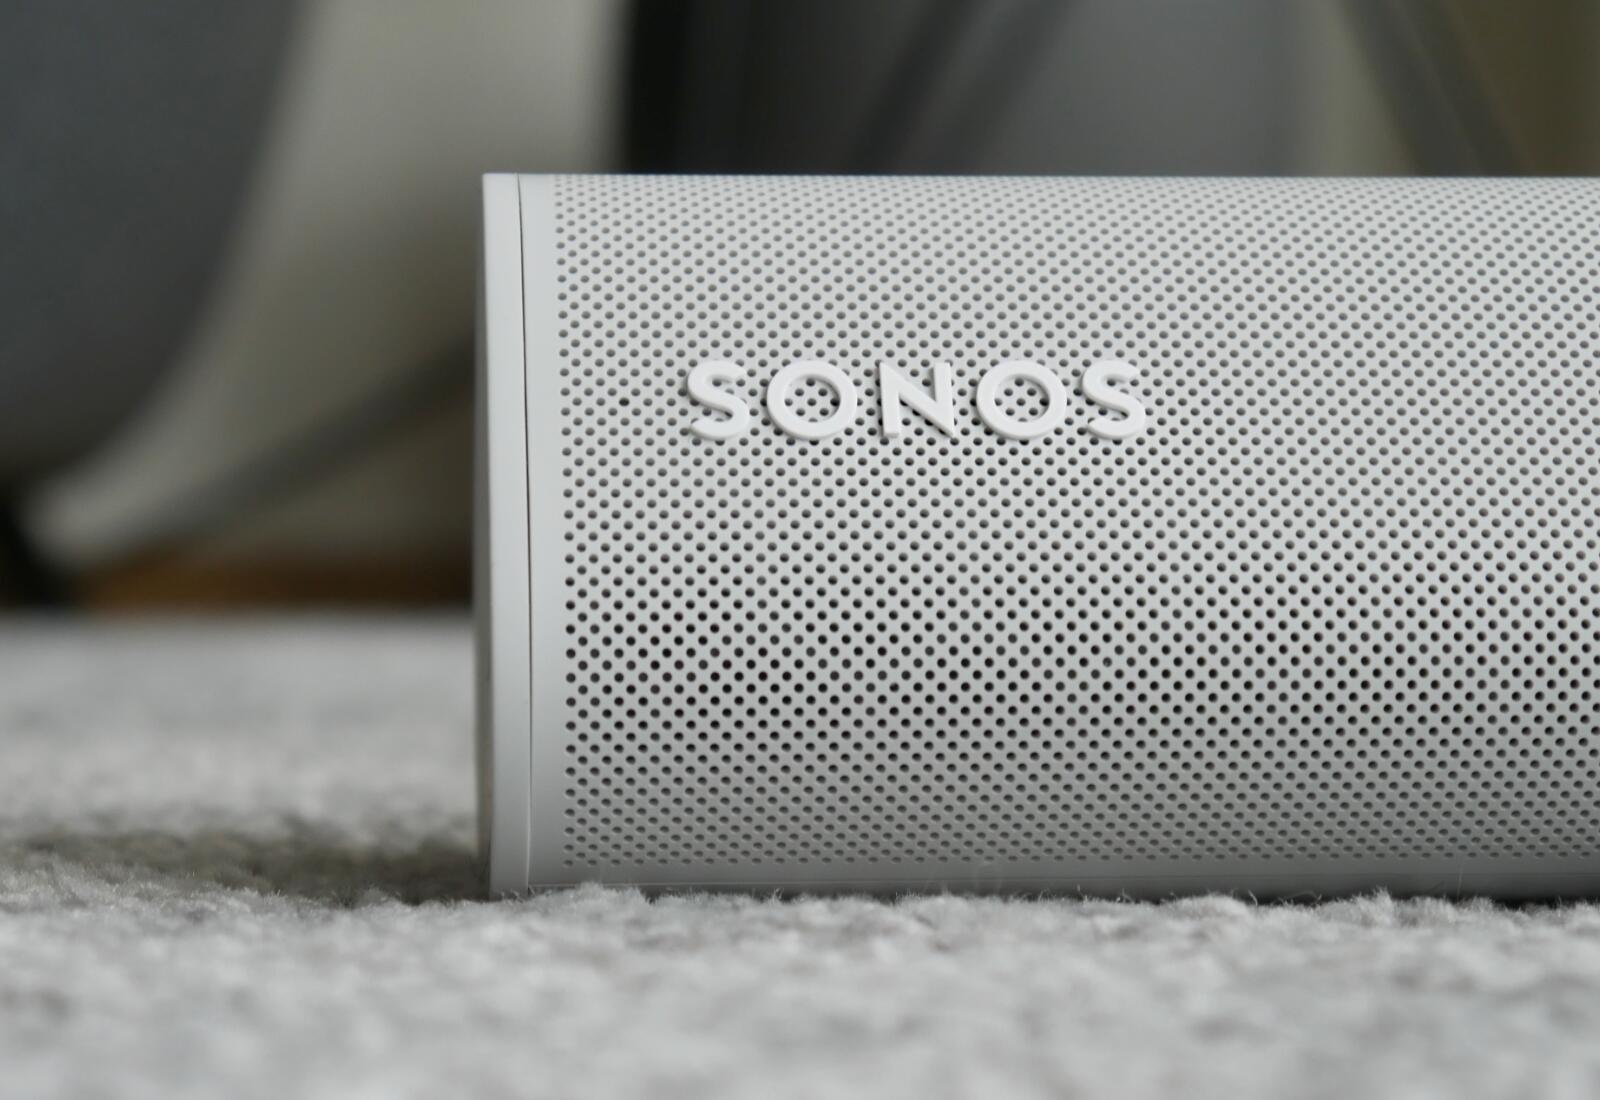 Sonos Detail Header